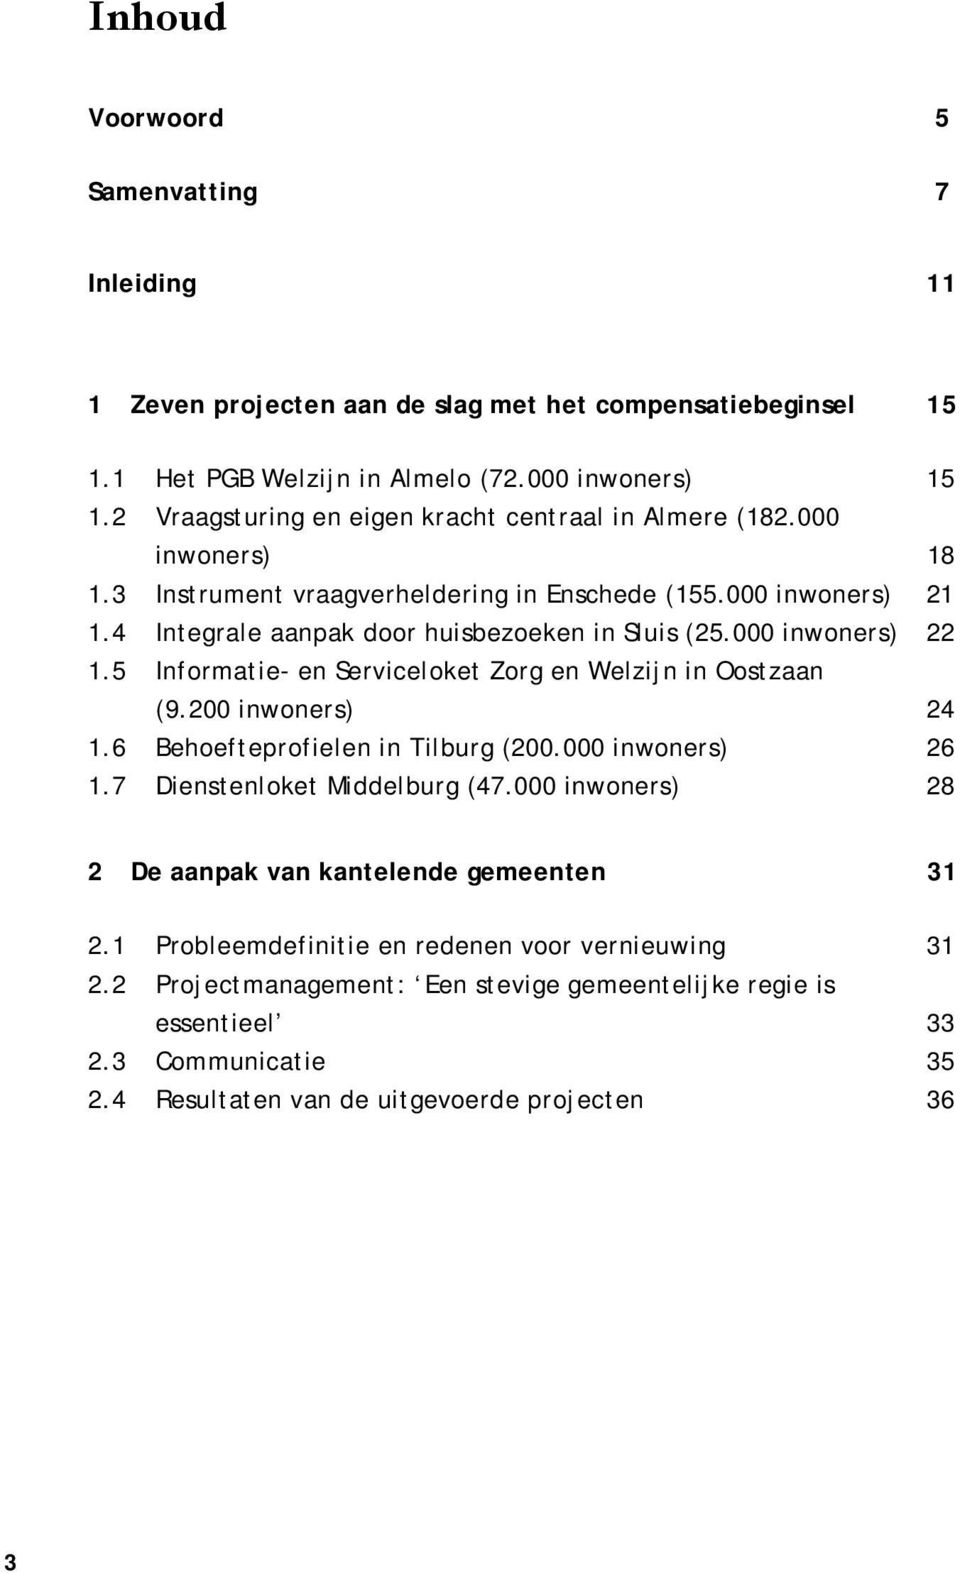 000 inwoners) 22 1.5 Informatie- en Serviceloket Zorg en Welzijn in Oostzaan (9.200 inwoners) 24 1.6 Behoefteprofielen in Tilburg (200.000 inwoners) 26 1.7 Dienstenloket Middelburg (47.